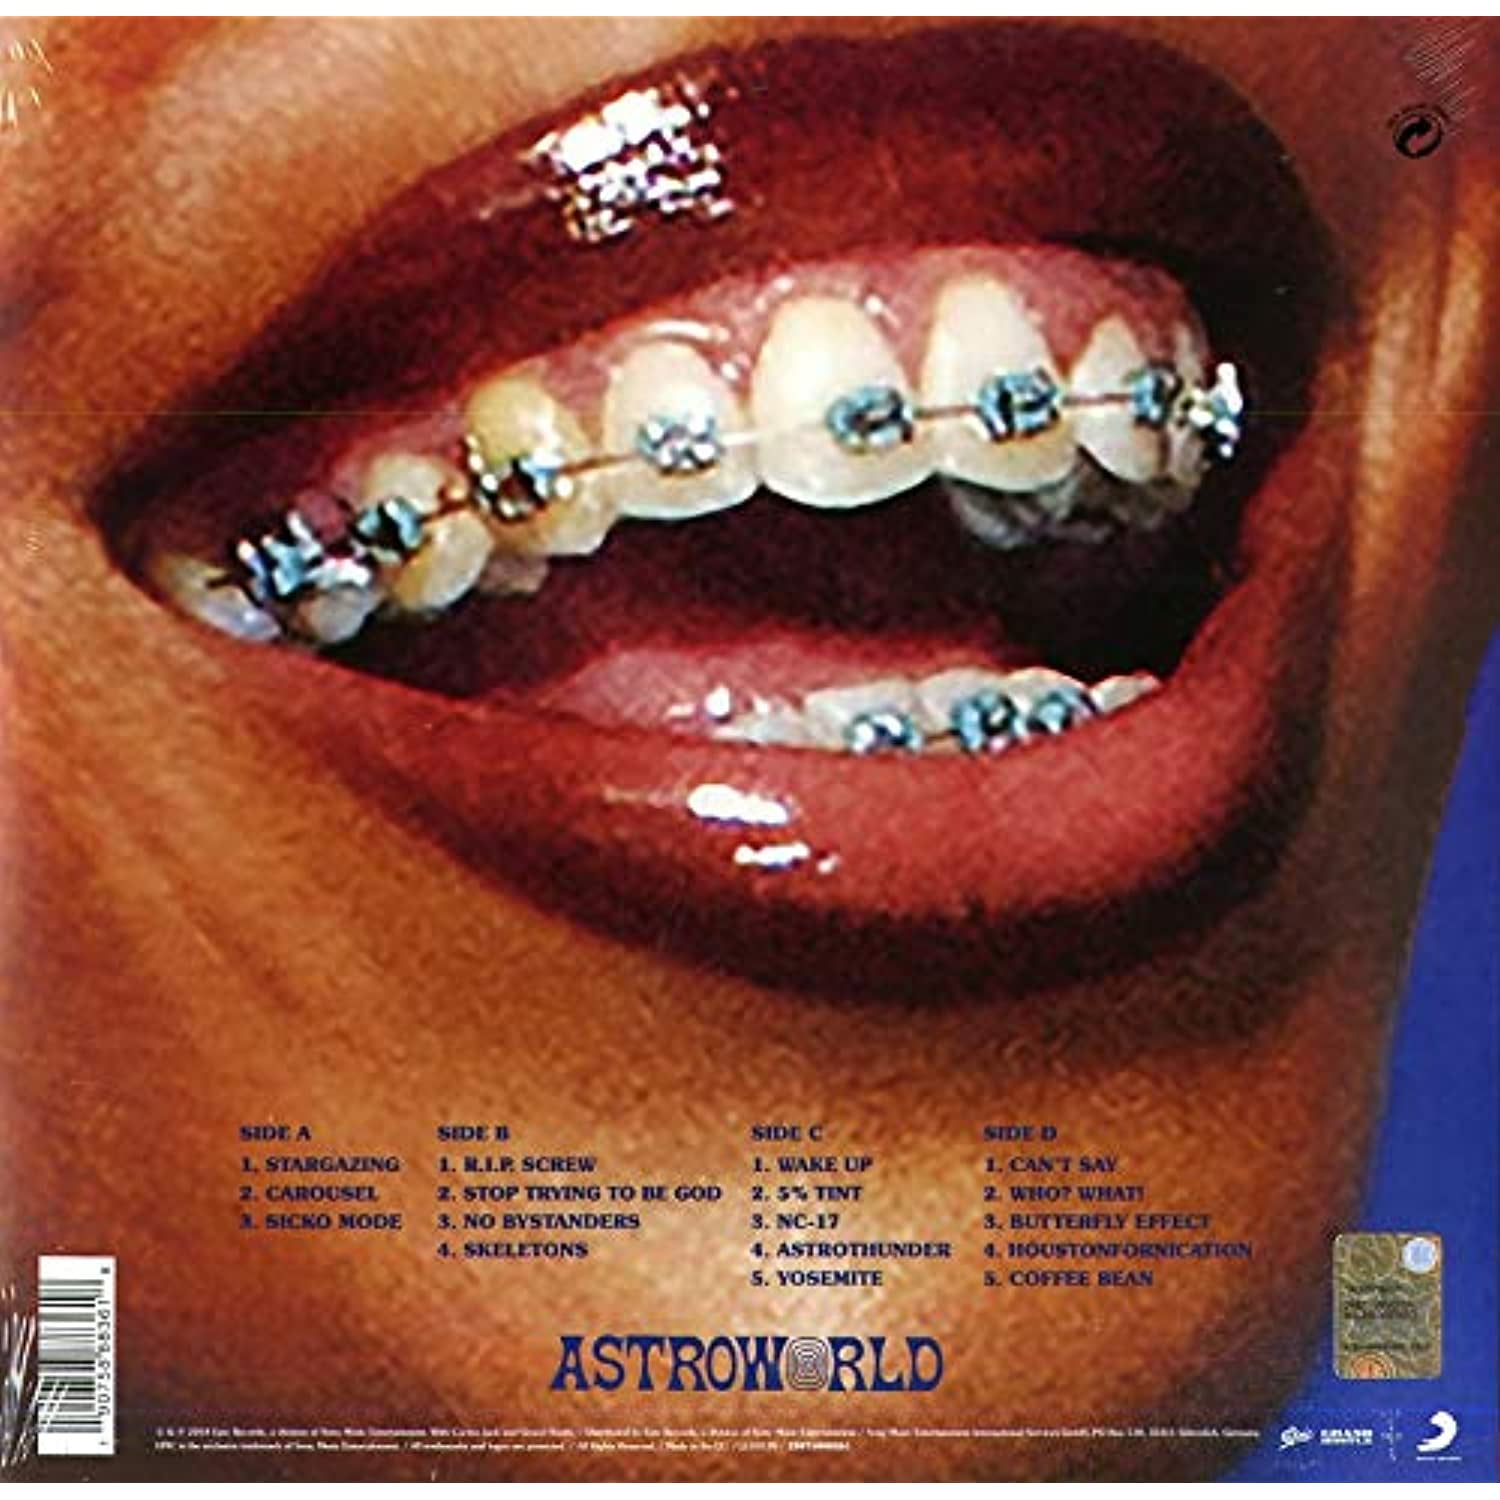 Travis Scott Astroworld (150 Gram Vinyl, Download Insert